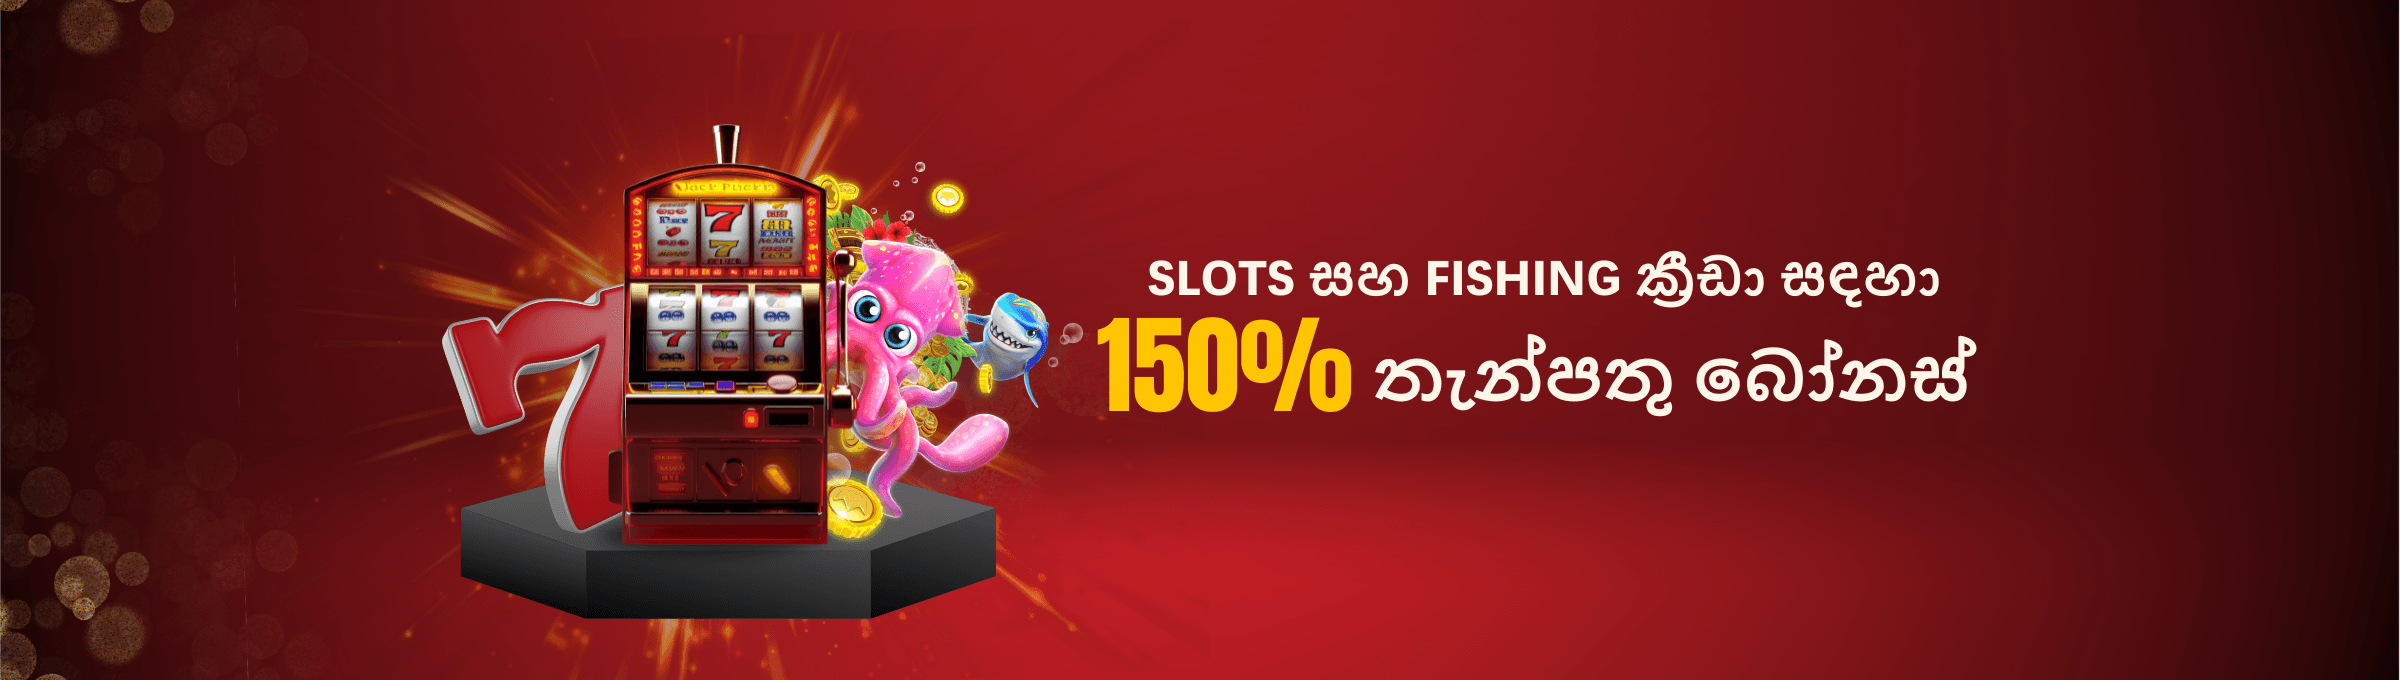 මාතෘකාව: Slots සහ Fishing ක්‍රීඩා සඳහා 150% තැන්පතු බෝනස්